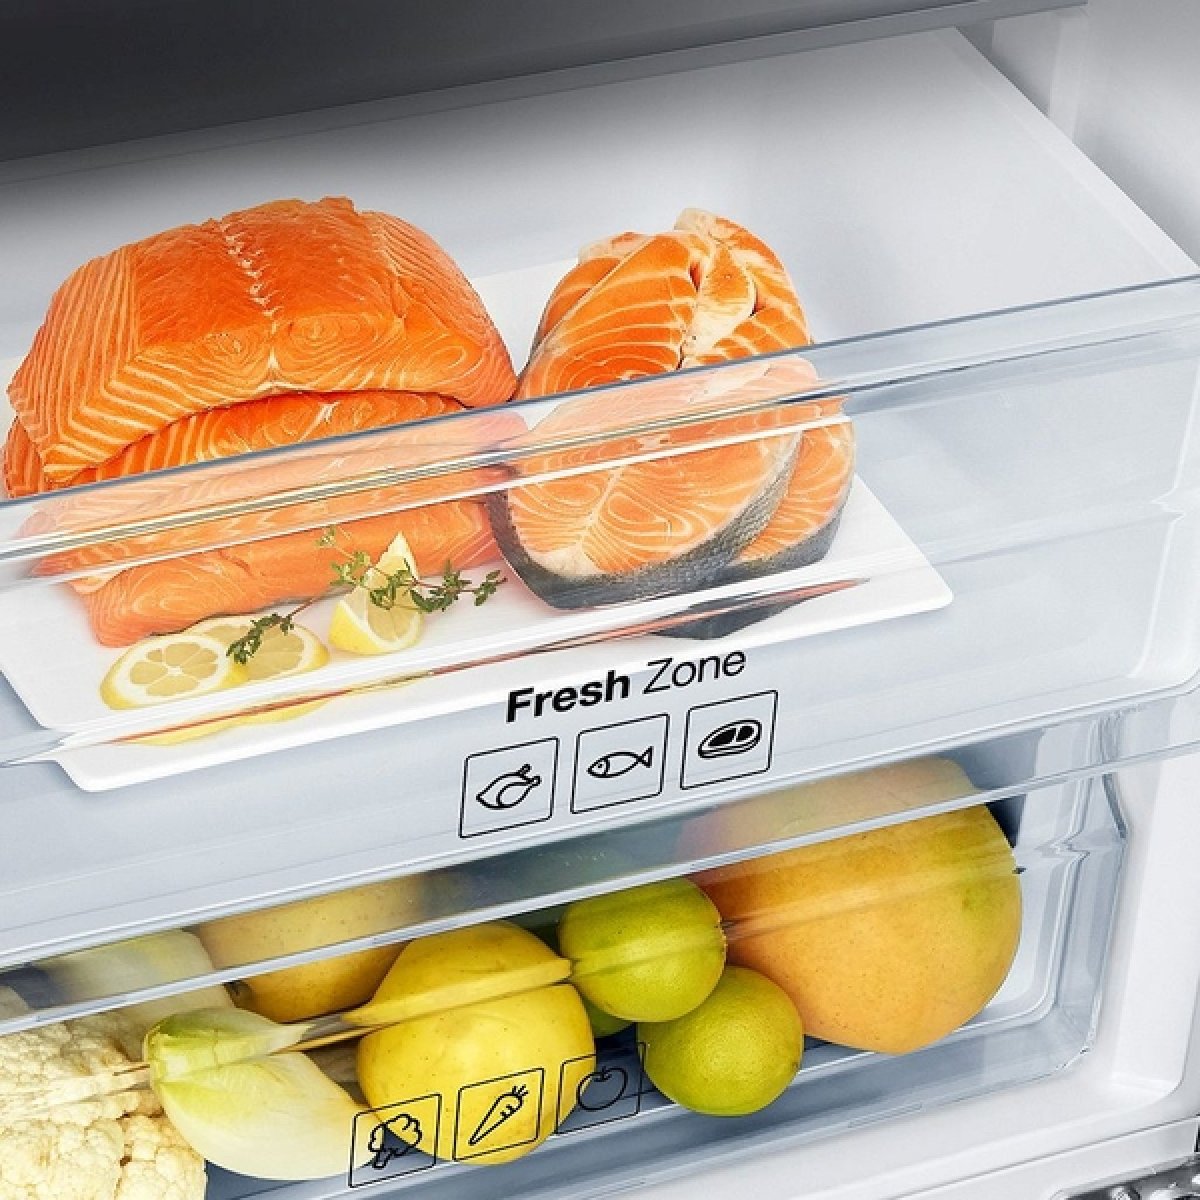 Fresh Zone в холодильнике что это. Атлант холодильник с Фреш зоной. Зона свежести в холодильнике что это и зачем. Тип зоны свежести (нулевой камеры). Сухая зона свежести